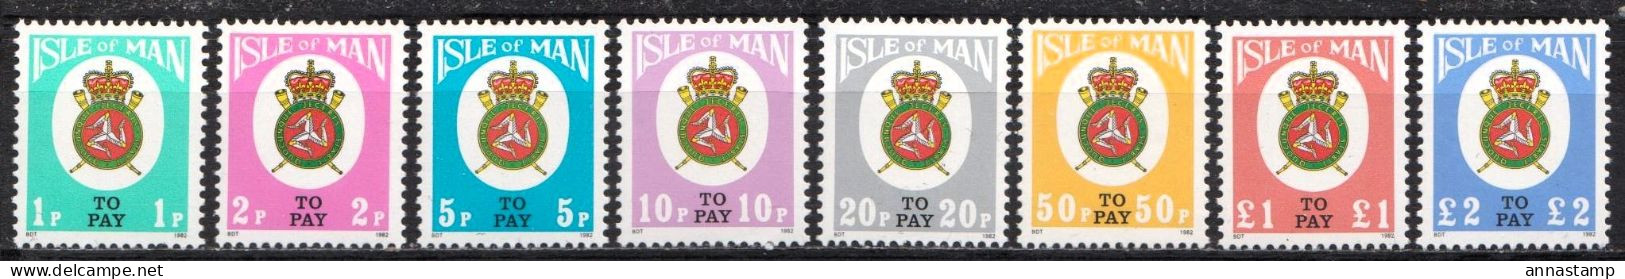 Isle Of Man MNH Set - Briefmarken